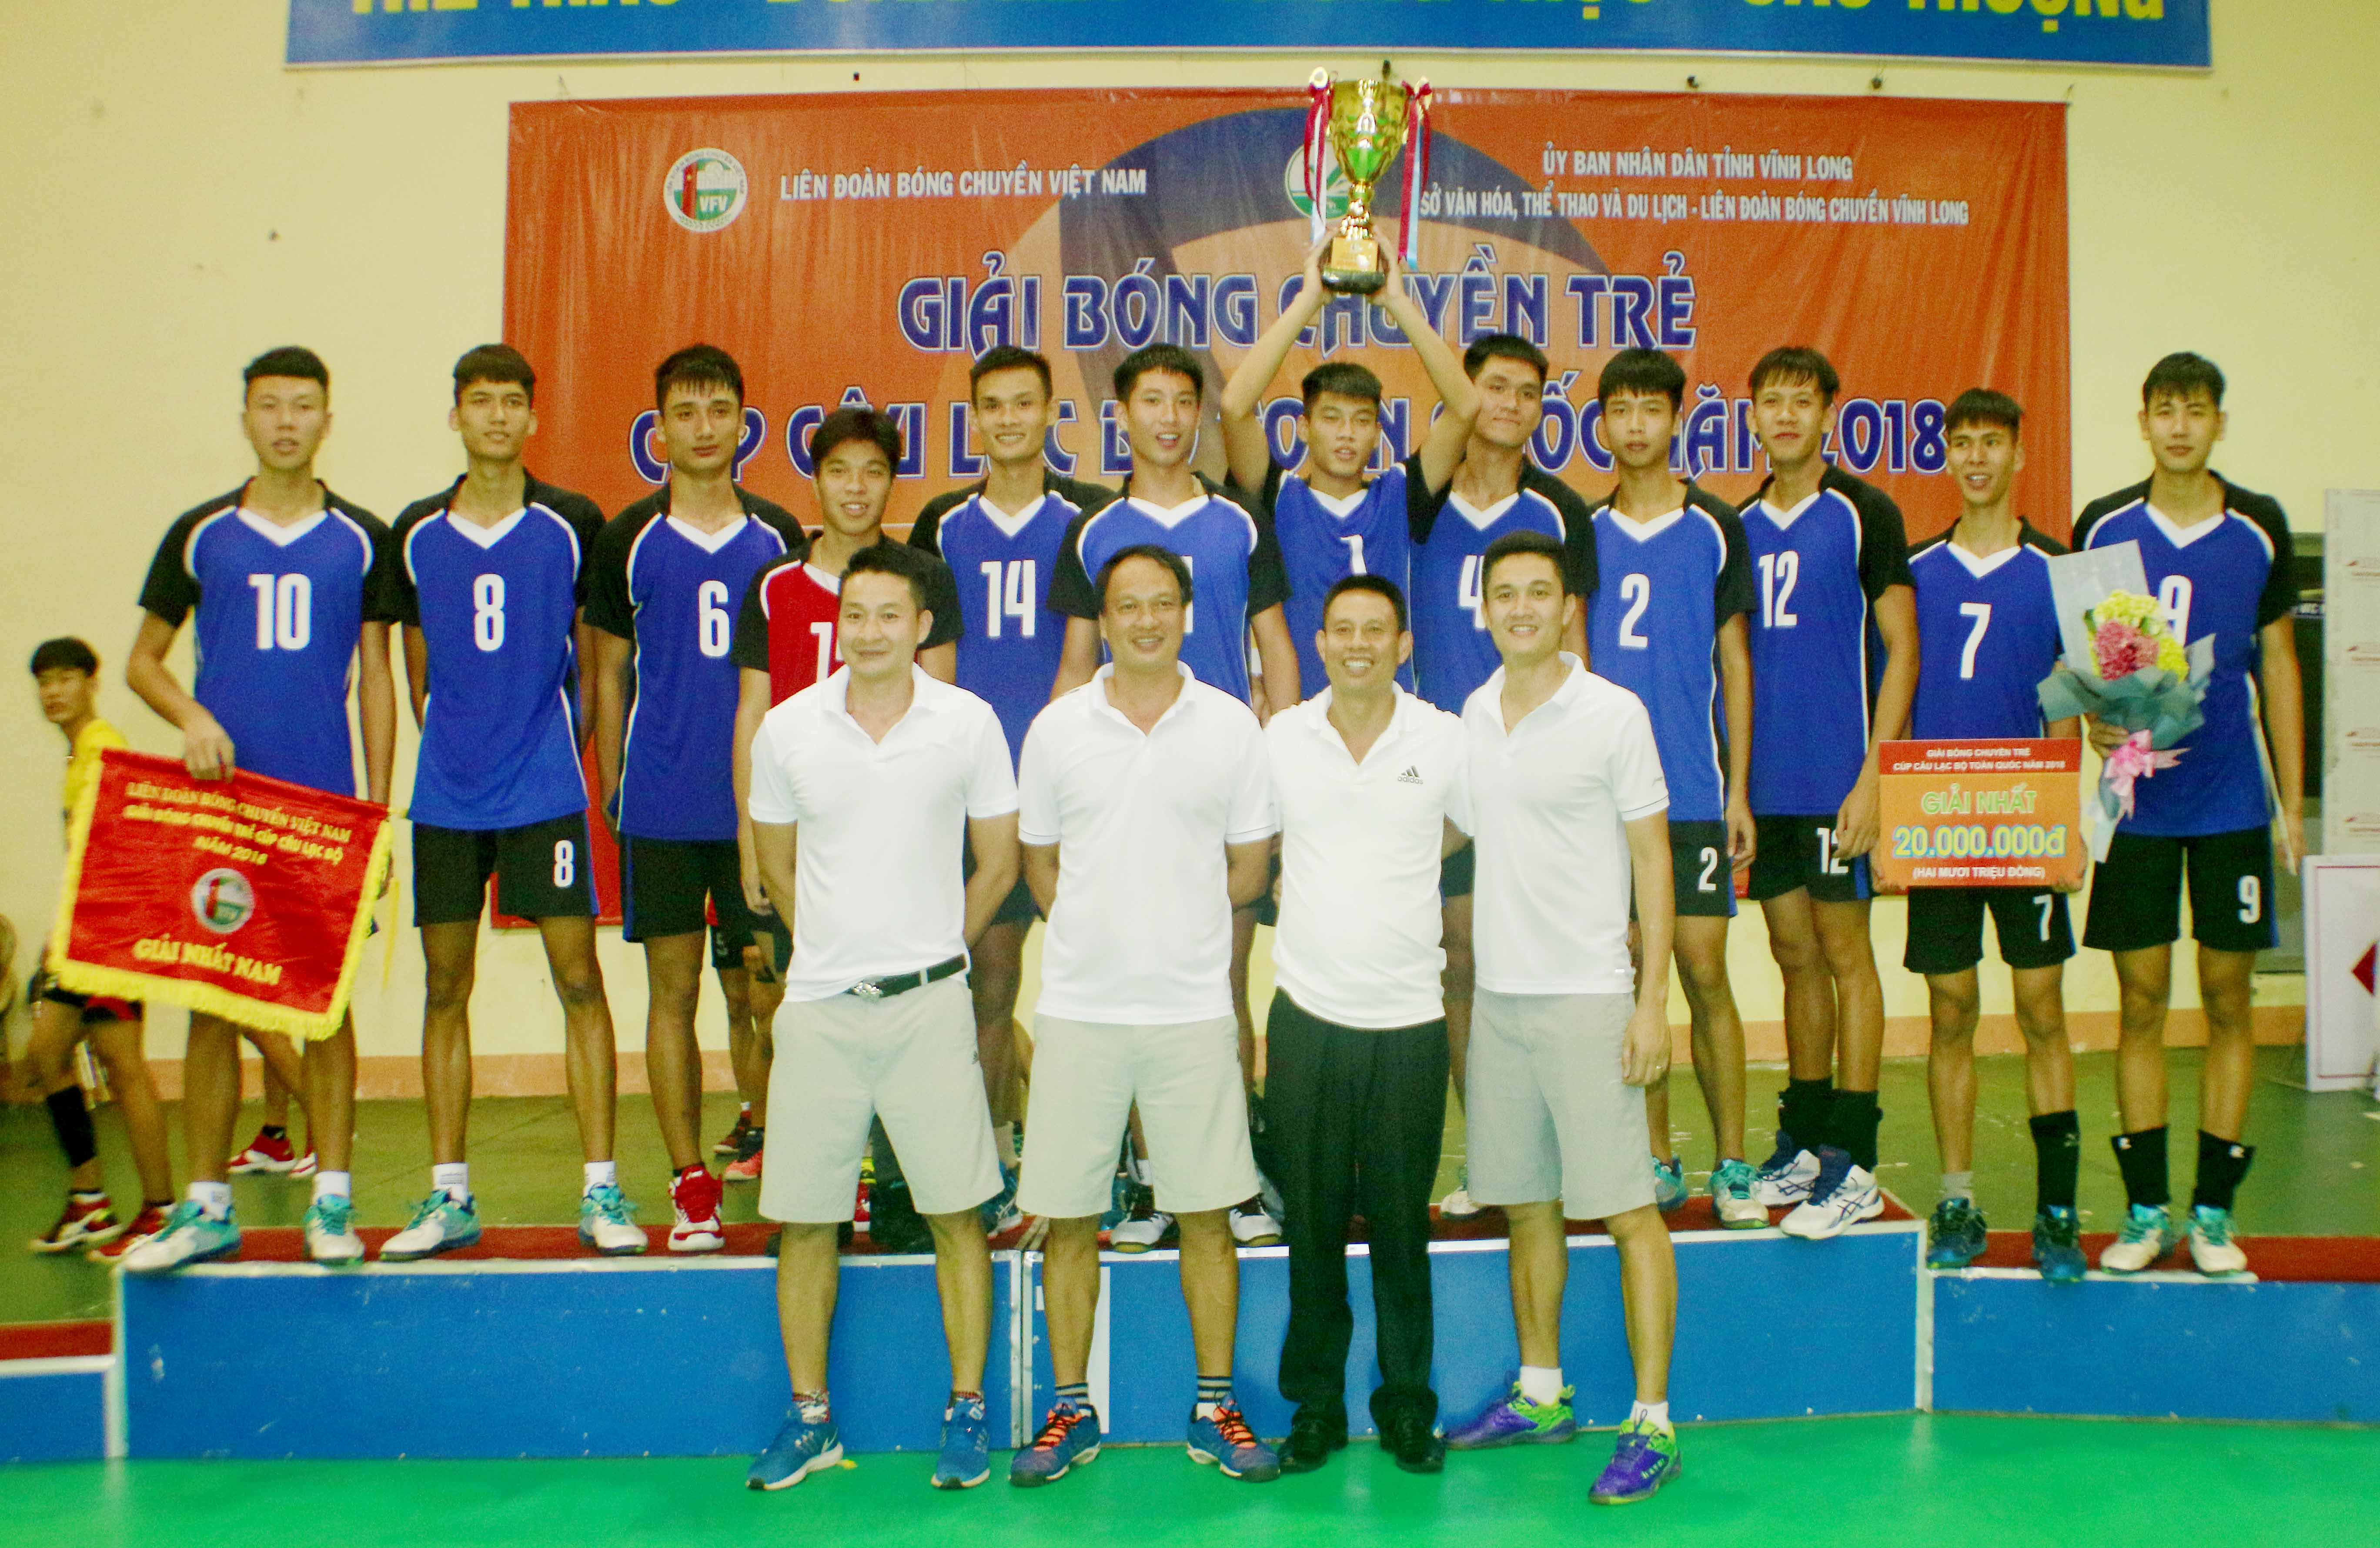 Giải bóng chuyền trẻ Cúp các CLB toàn quốc 2018: VTV Bình Điền Long An và Biên Phòng đăng quang